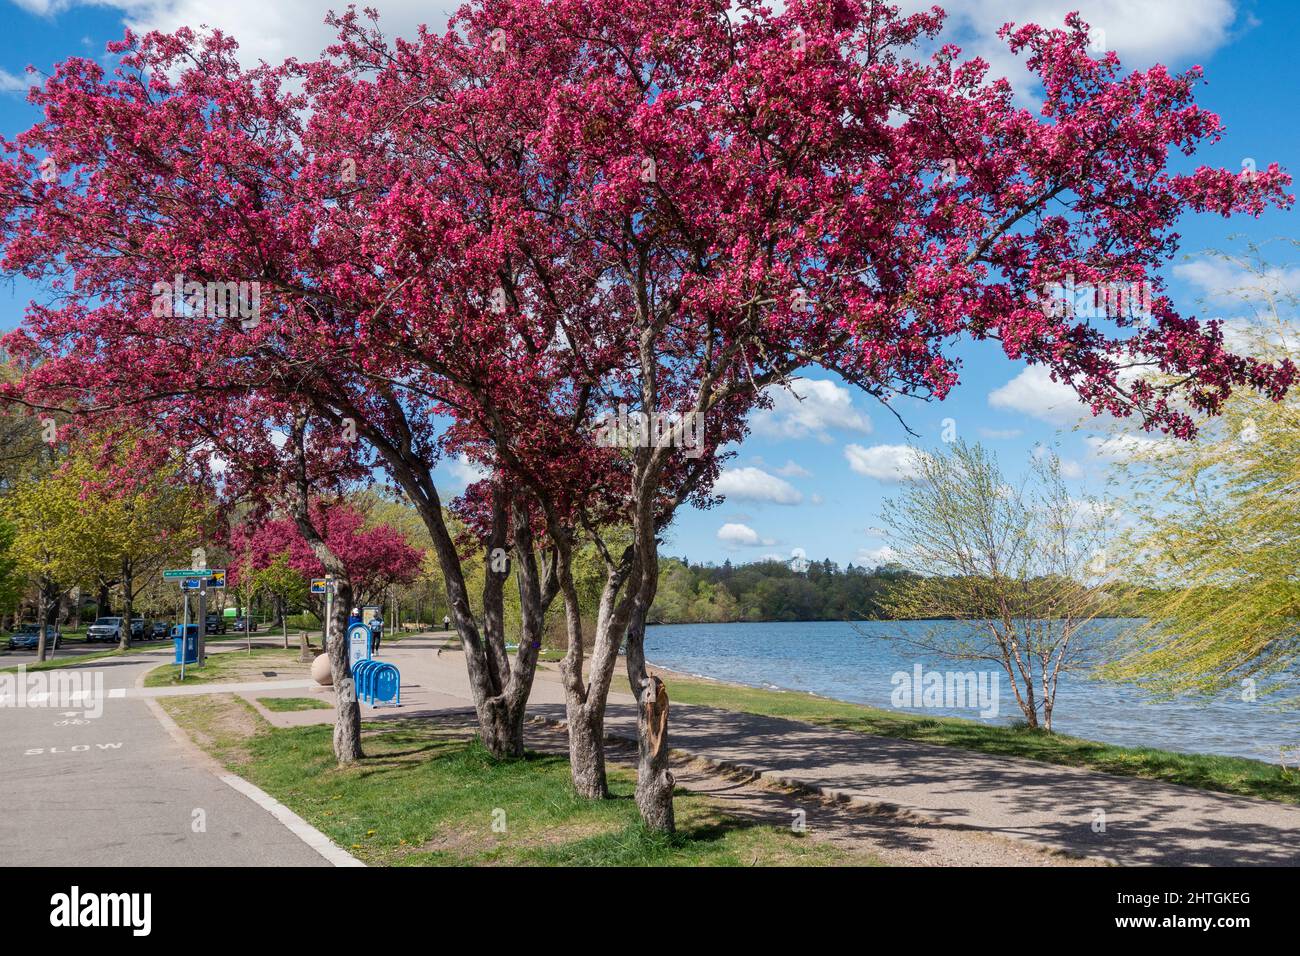 Hermosos árboles frutales de flores moradas que se arquean sobre los senderos para caminatas y bicicletas alrededor del lago Harriet. Minneapolis Minnesota MN Estados Unidos Foto de stock